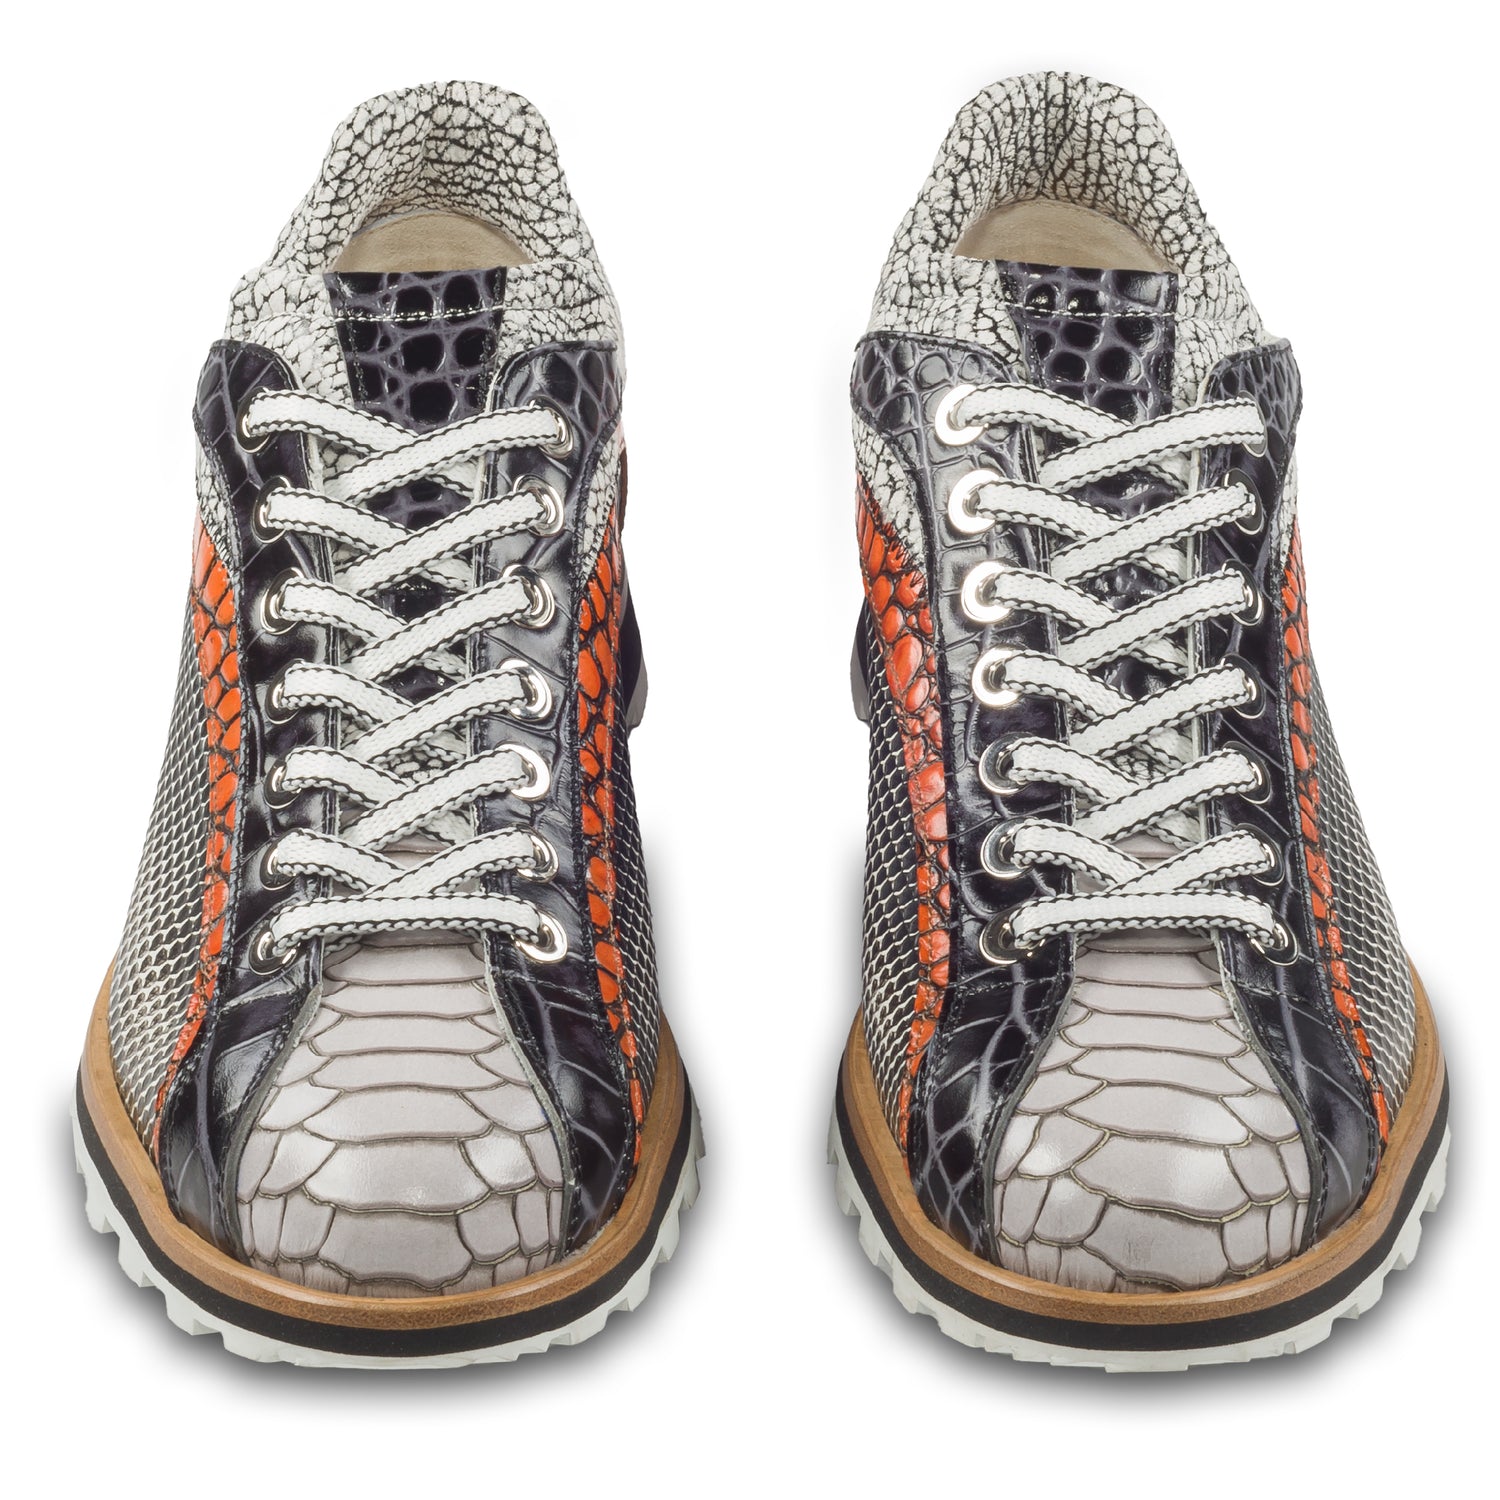 Lorenzi Herren Leder-Sneaker mit raffinierter Prägung in schwarz / weiß / orange. Handgefertigt. Paarweise Ansicht von vorne. Schnürsenkel in weiß/schwarz.